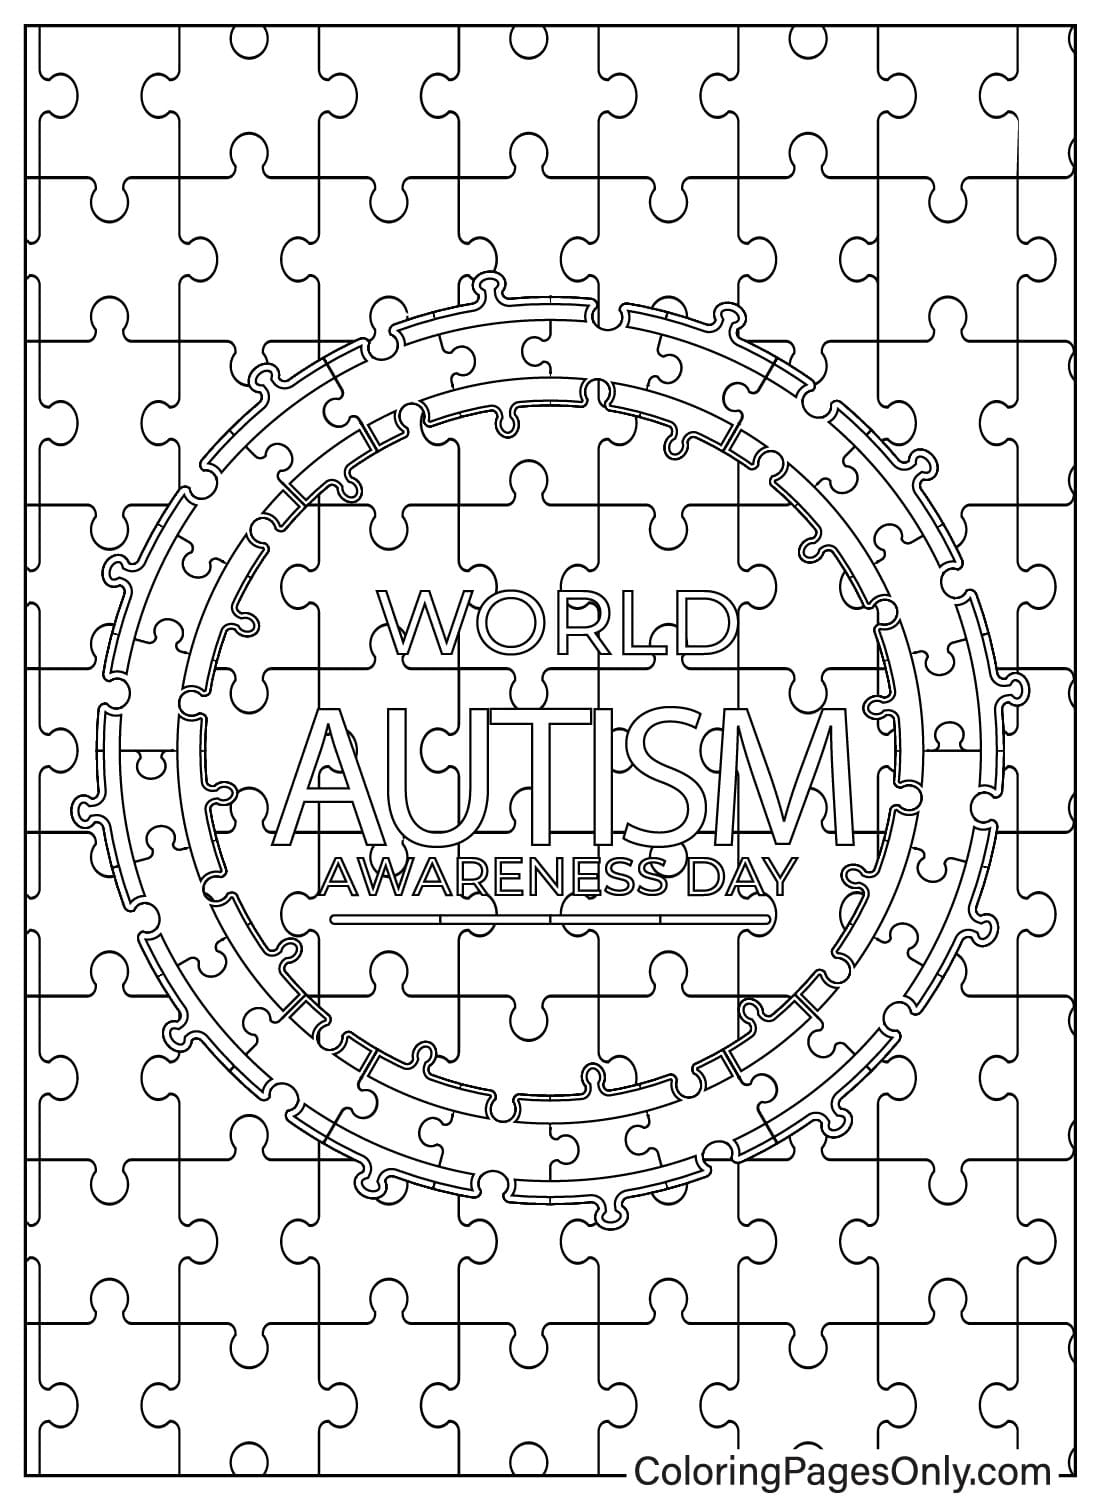 Página para colorear de concienciación sobre el autismo del Día Mundial de Concienciación sobre el Autismo